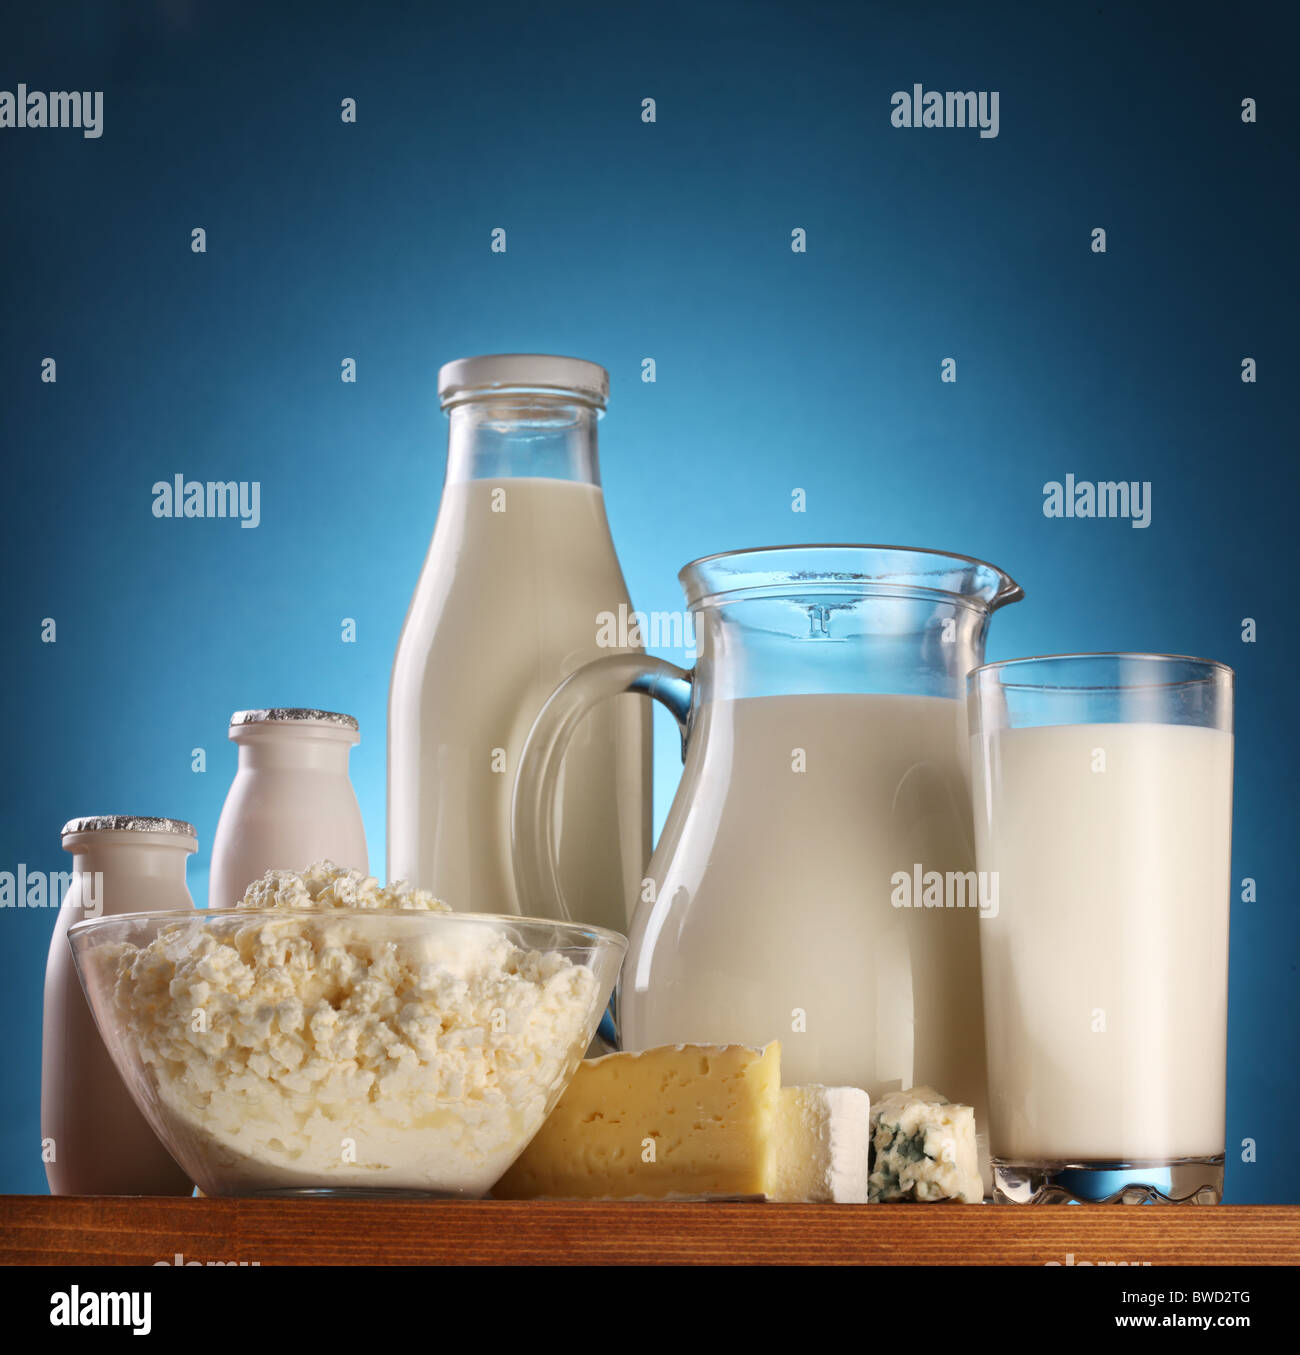 Verschiedene Milchprodukte: Käse; Creme; Milch. Auf einem blauen Hintergrund. Stockfoto